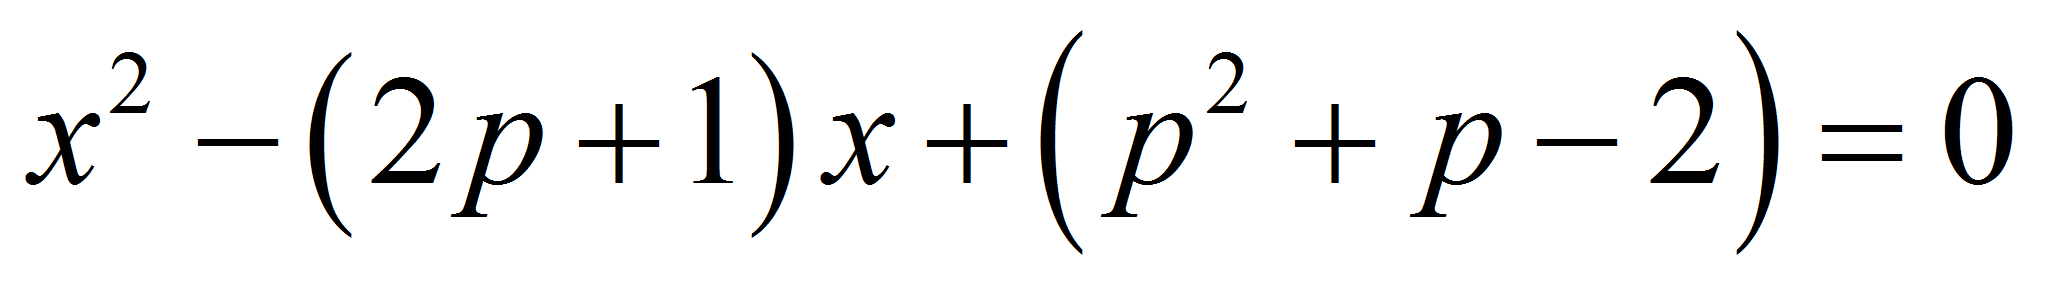 Сложное математическое уравнение. Самое сложное уравнение в мире. Очень сложное уравнение. Самоеисложное уравнение.